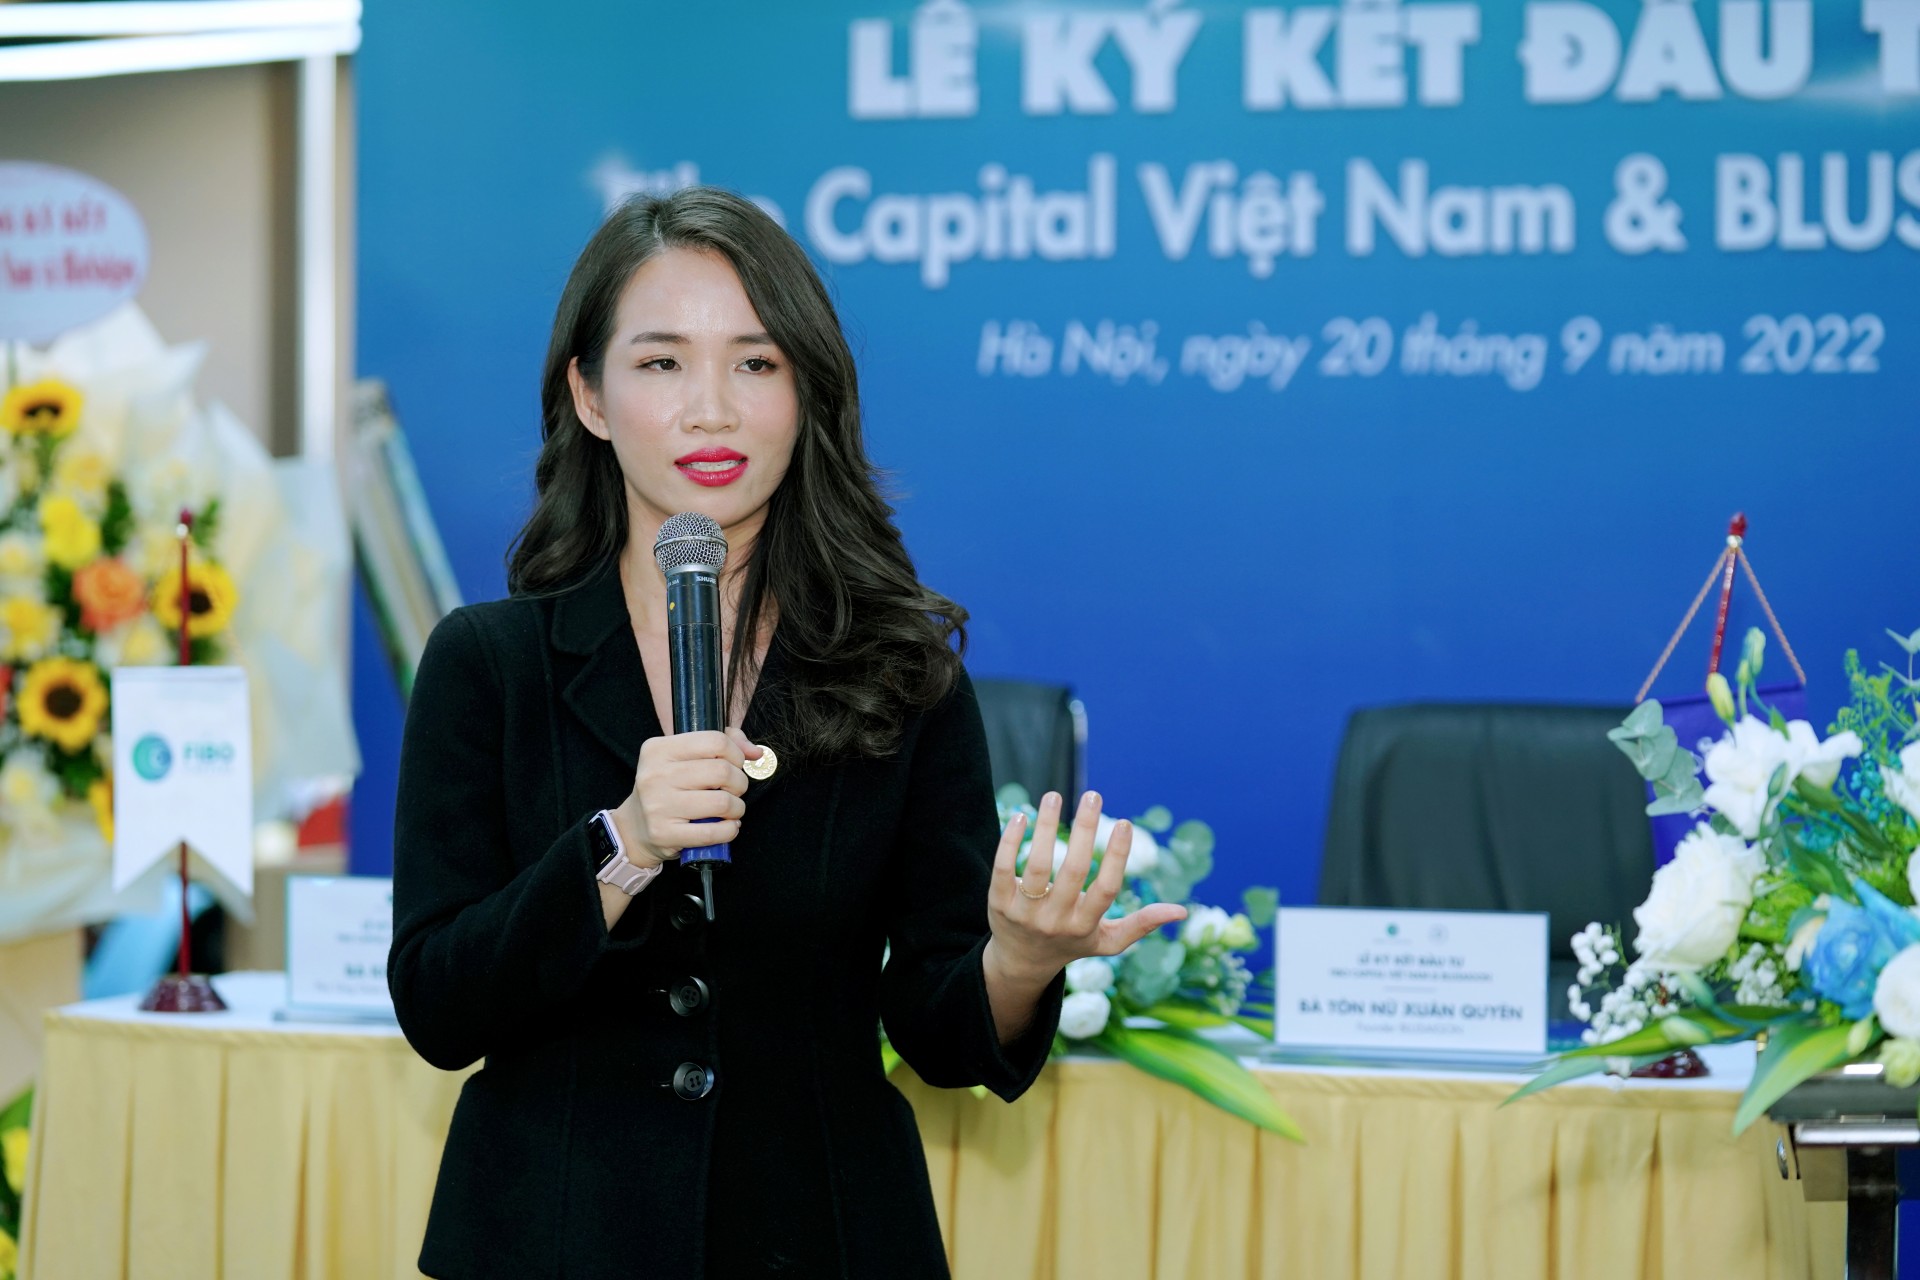 Fibo Capital Việt Nam ký kết đầu tư với BluSaigon: Nâng tầm thương hiệu Việt